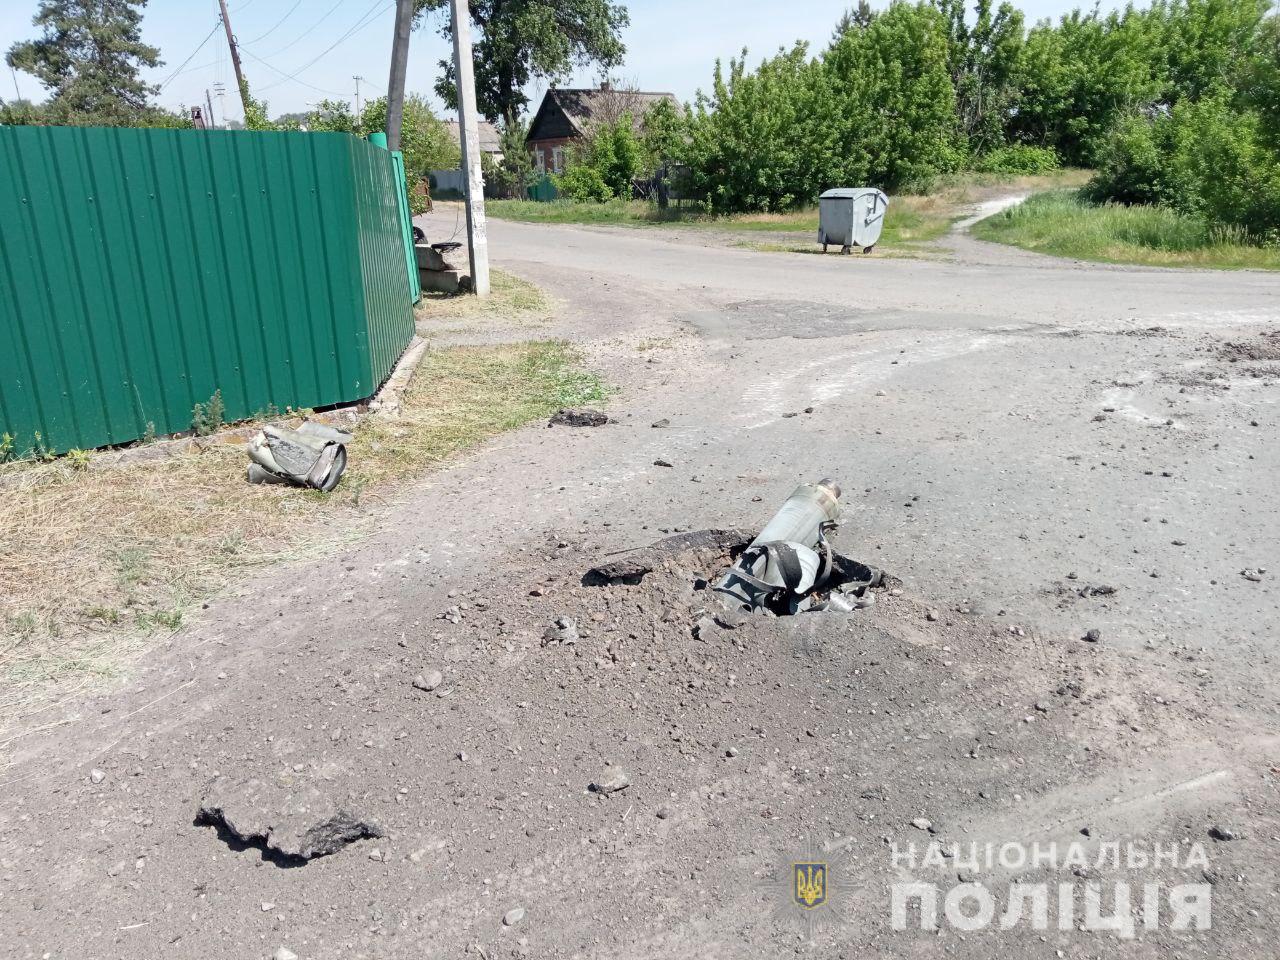 Били из “Ураганов” и танков: 26 мая в Донецкой области оккупанты разрушили 94 мирных объекта. Есть погибшие 8